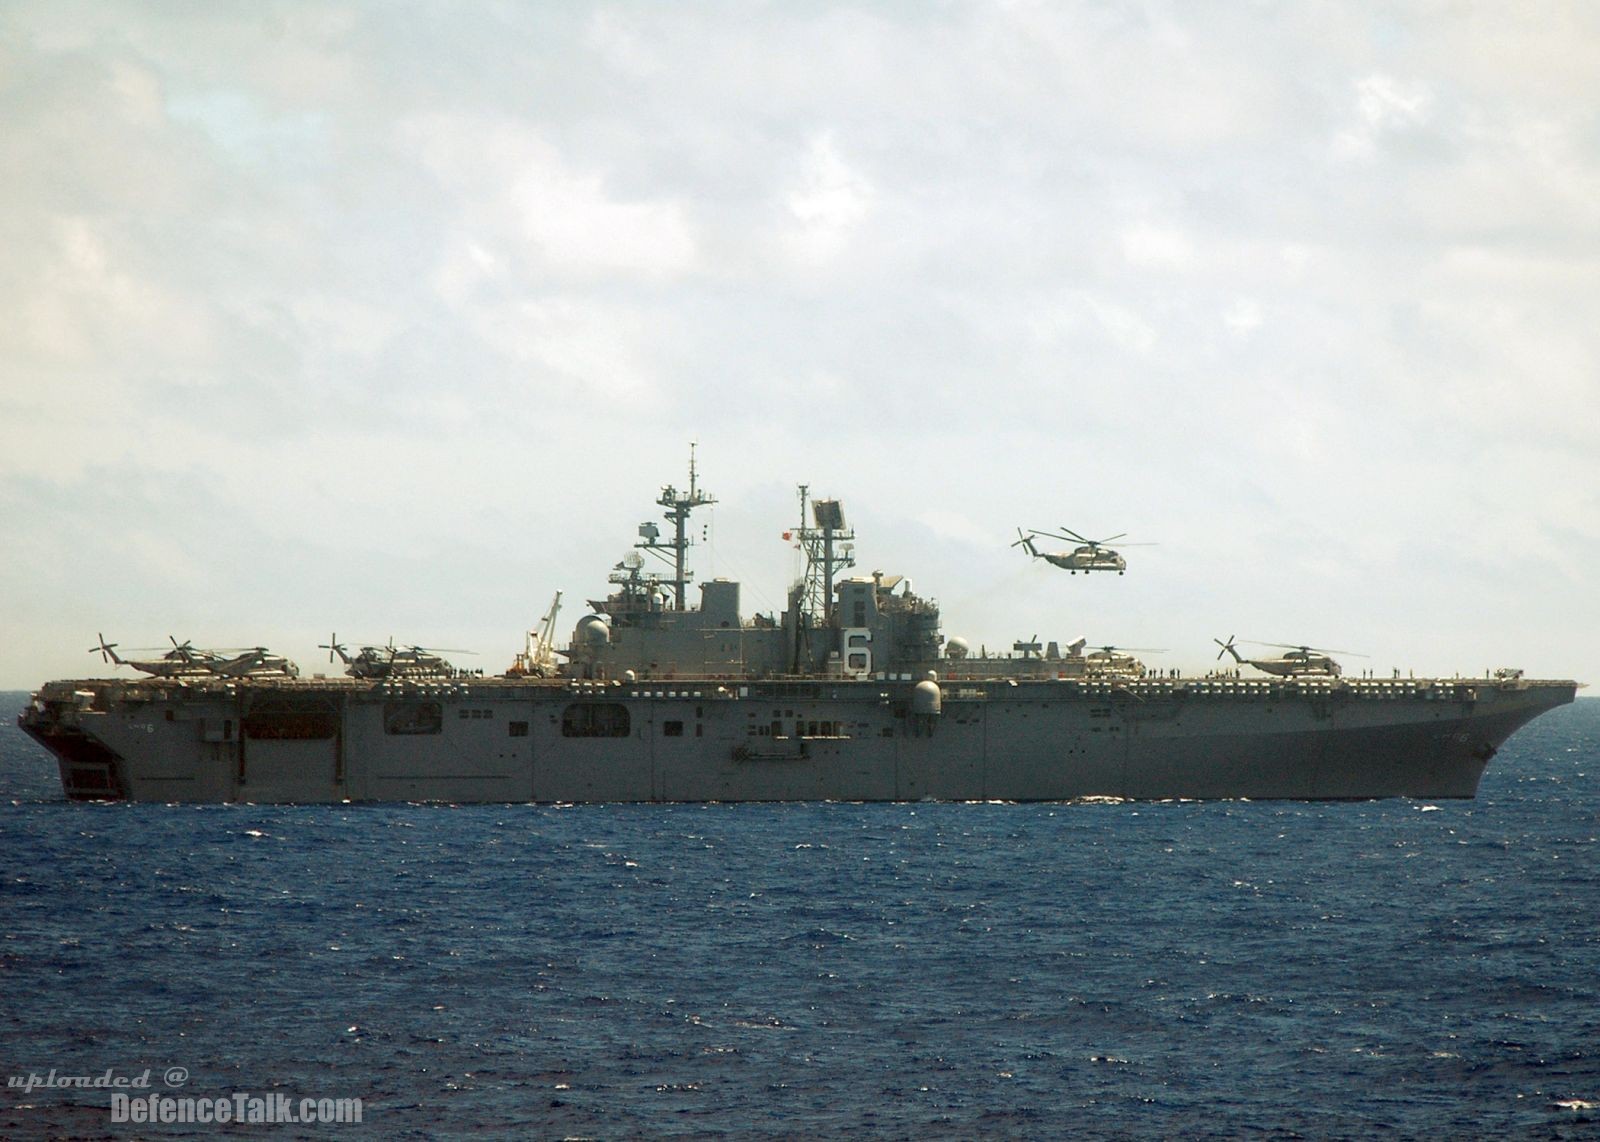 USS Bonhomme Richard LHD 6 - Amphibious Assault Ship